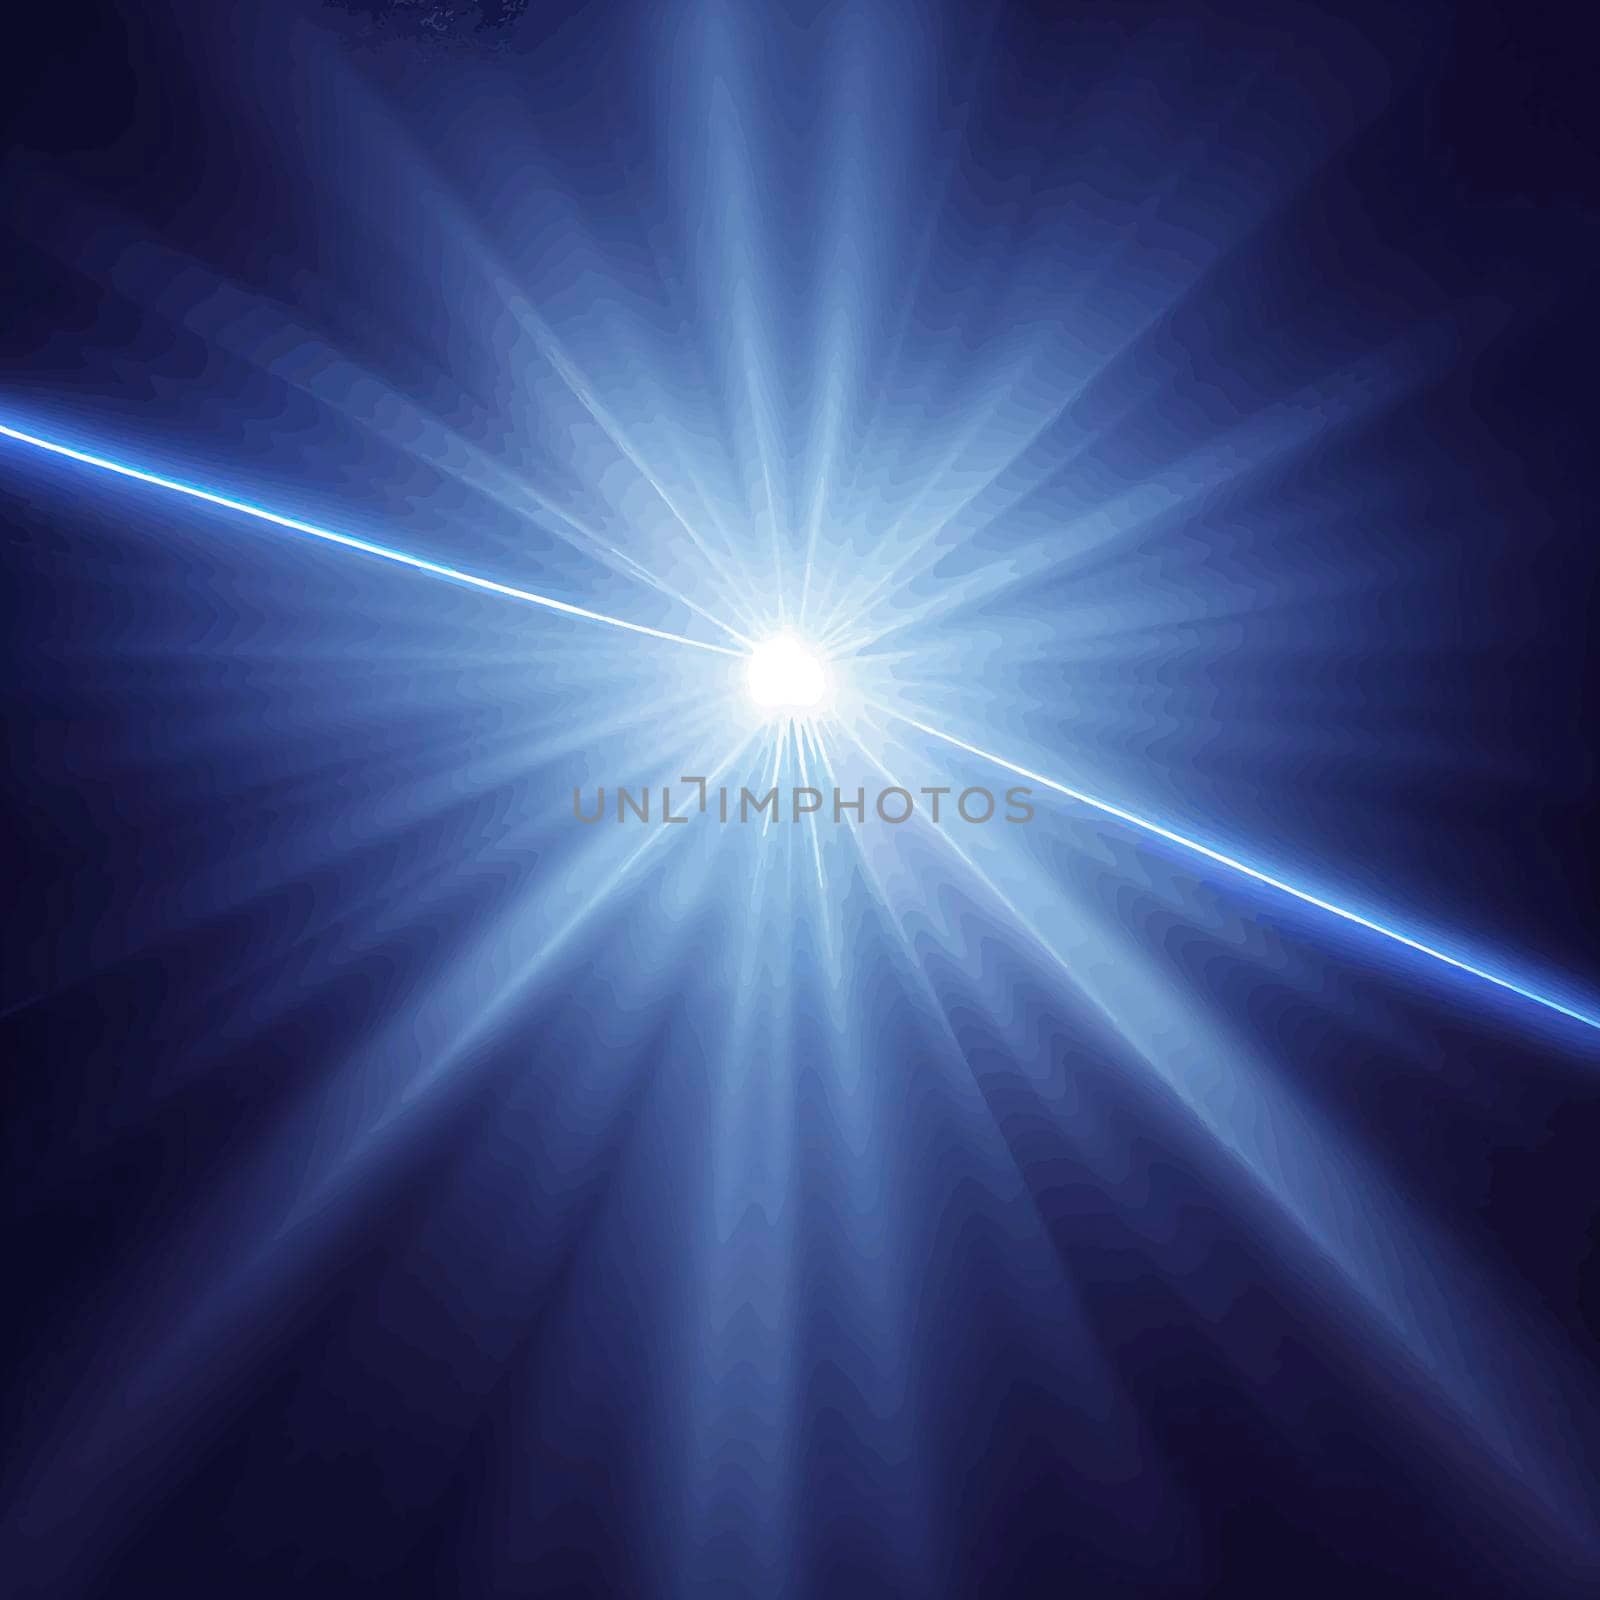 blue Light Lens flare on black background. Lens flare with bright light isolated with a black background by JpRamos